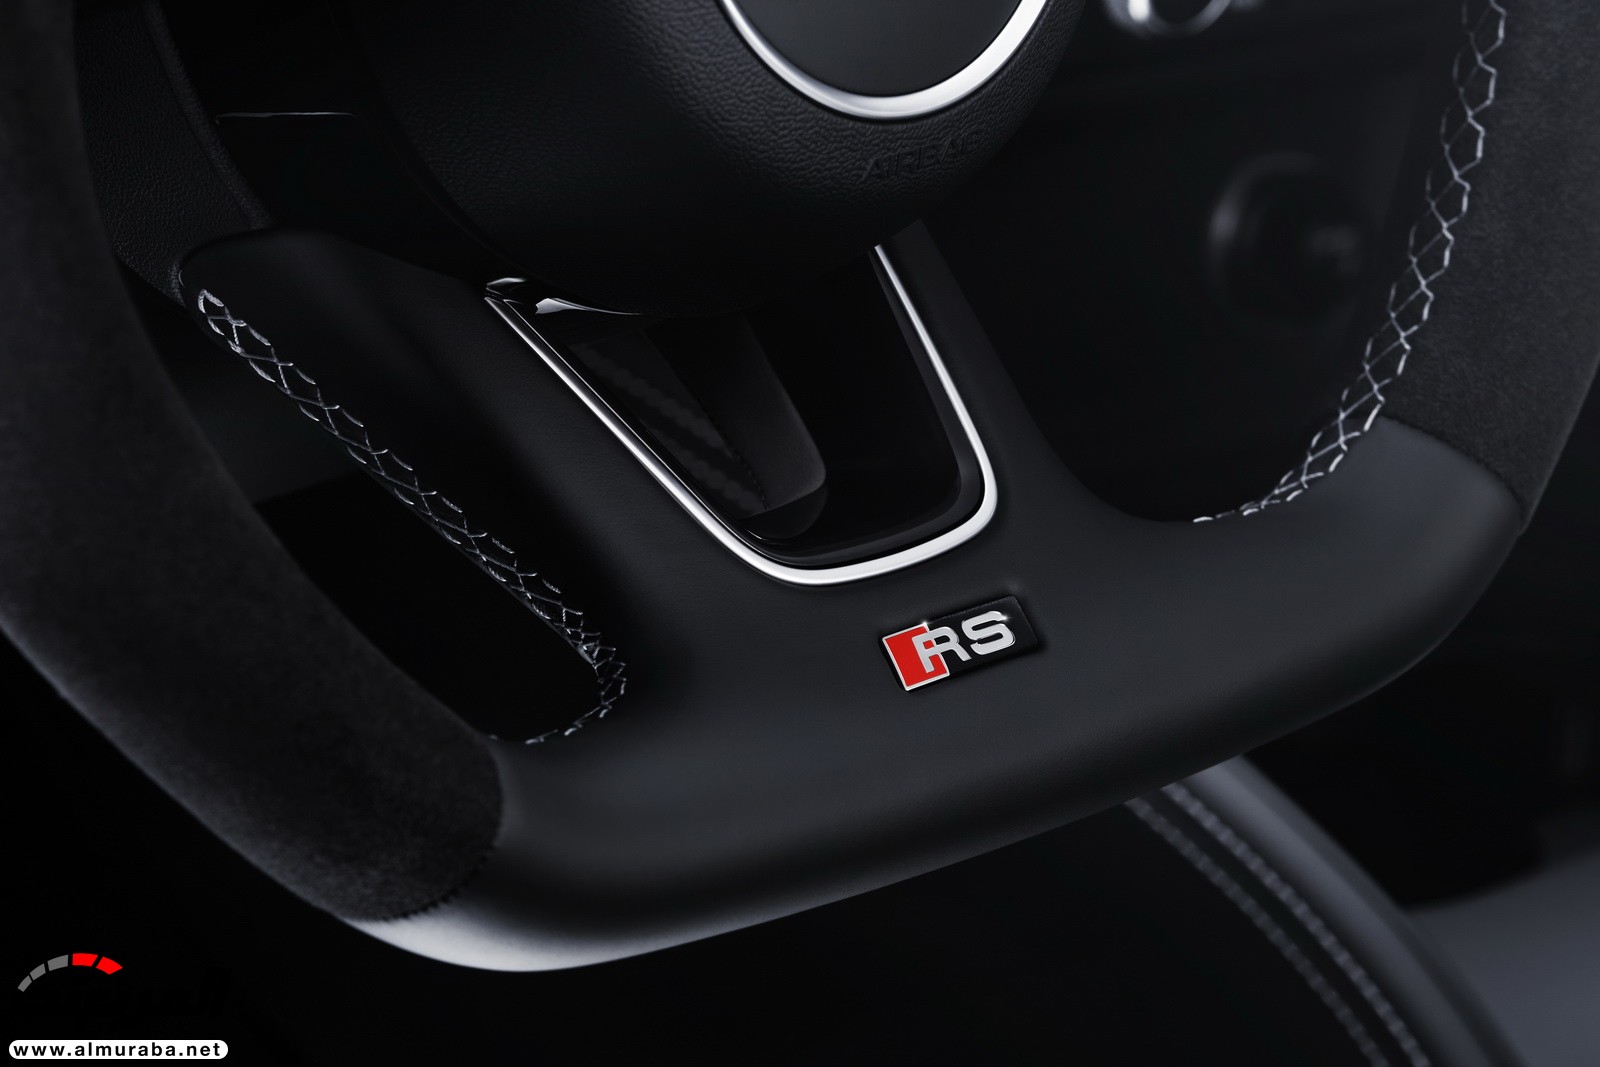 "أودي" تكشف عن RS3 الجديدة كليا 2018 بقوة 395 حصان Audi 26